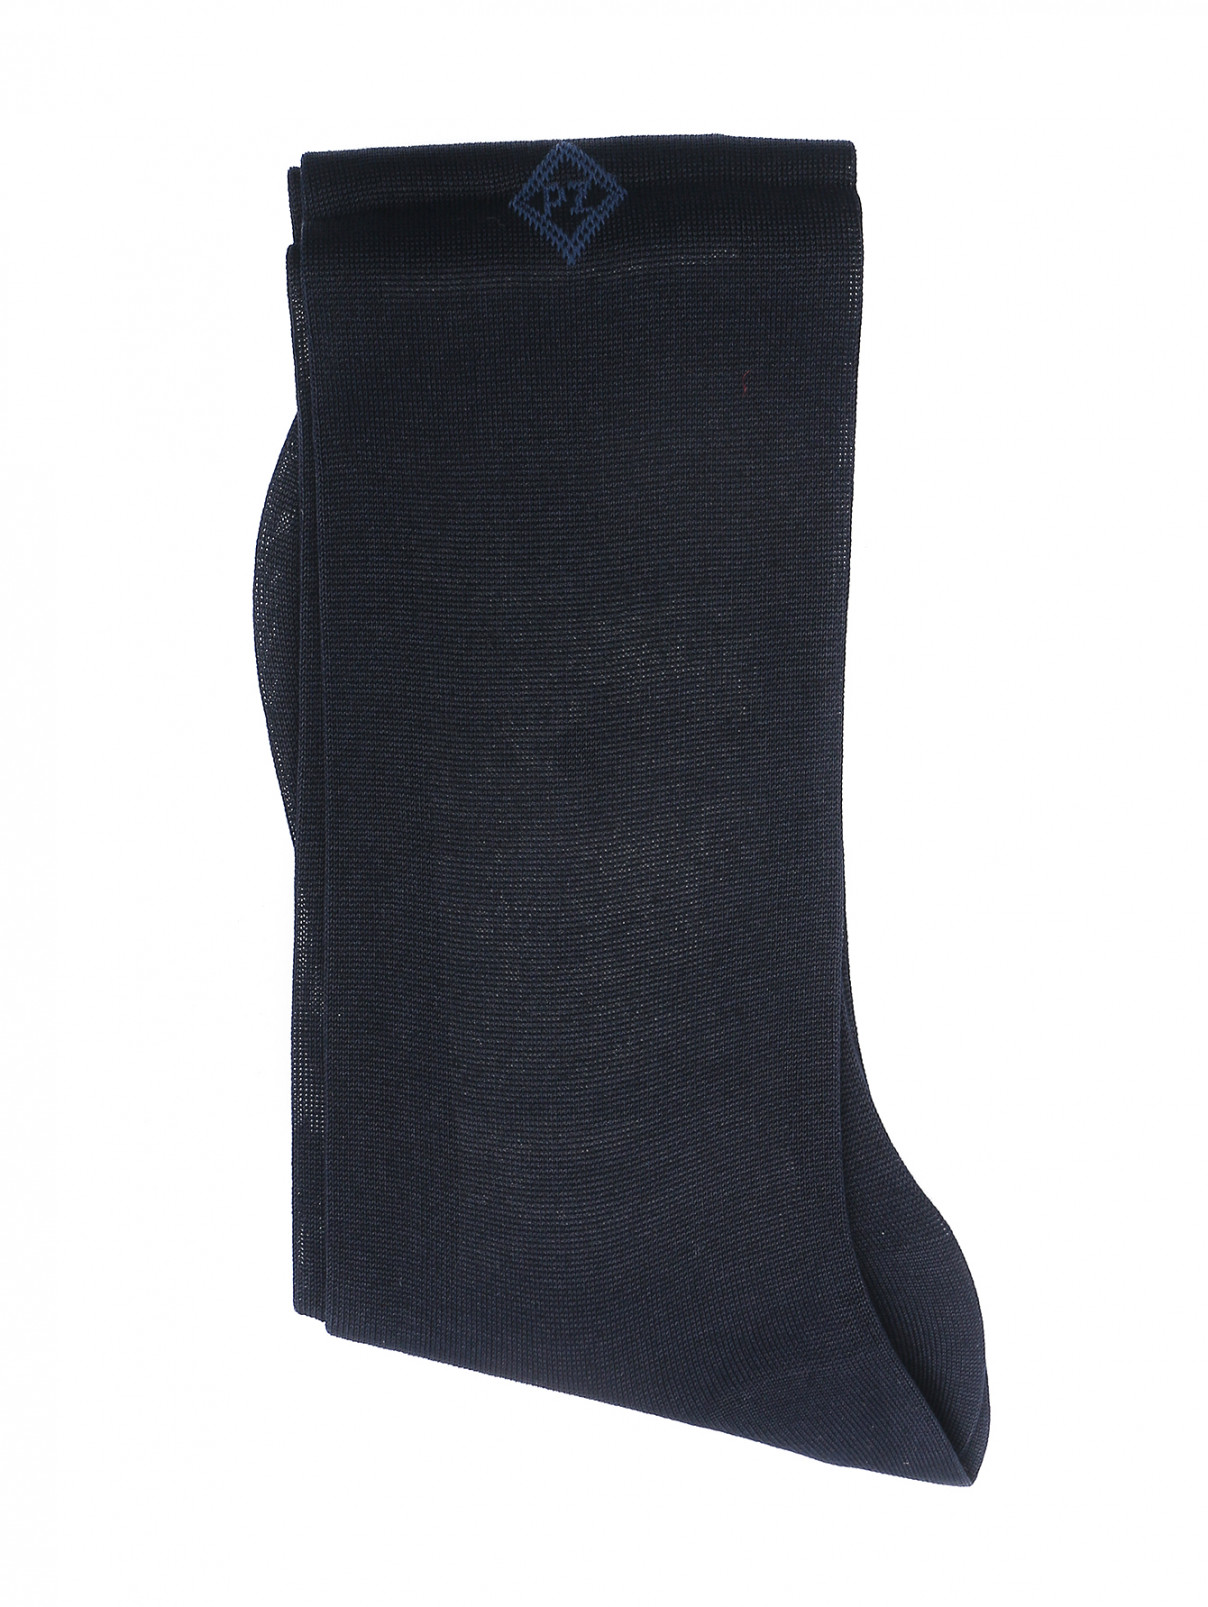 Однотонные носки из хлопка Pal Zileri  –  Общий вид  – Цвет:  Синий